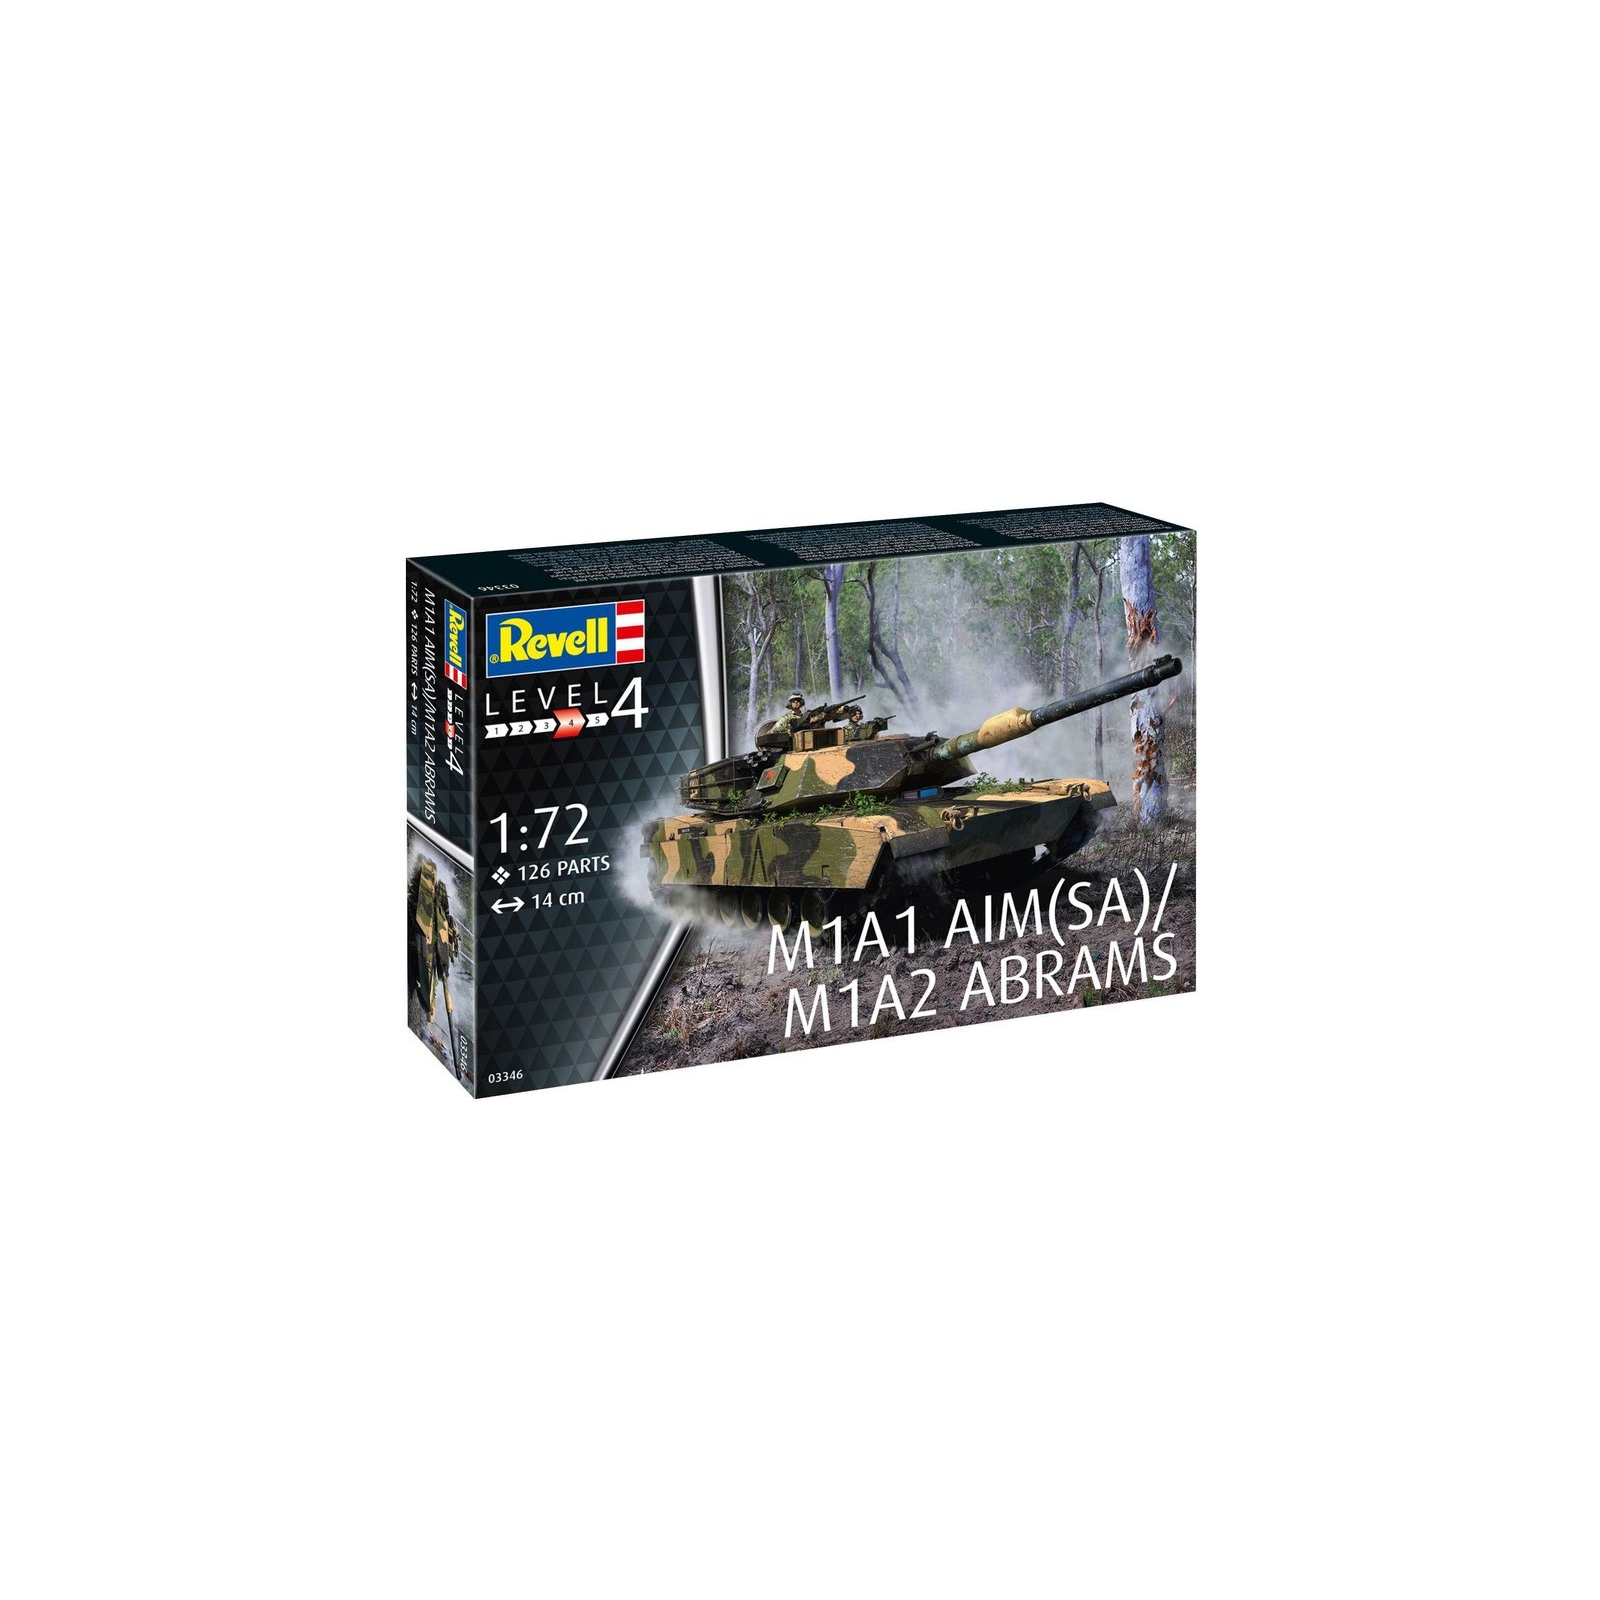 Сборная модель Revell Танк Абрамс M1A1 AIM(SA)/ M1A2 уровень 4 масштаб 1:72 (RVL-03346) изображение 9